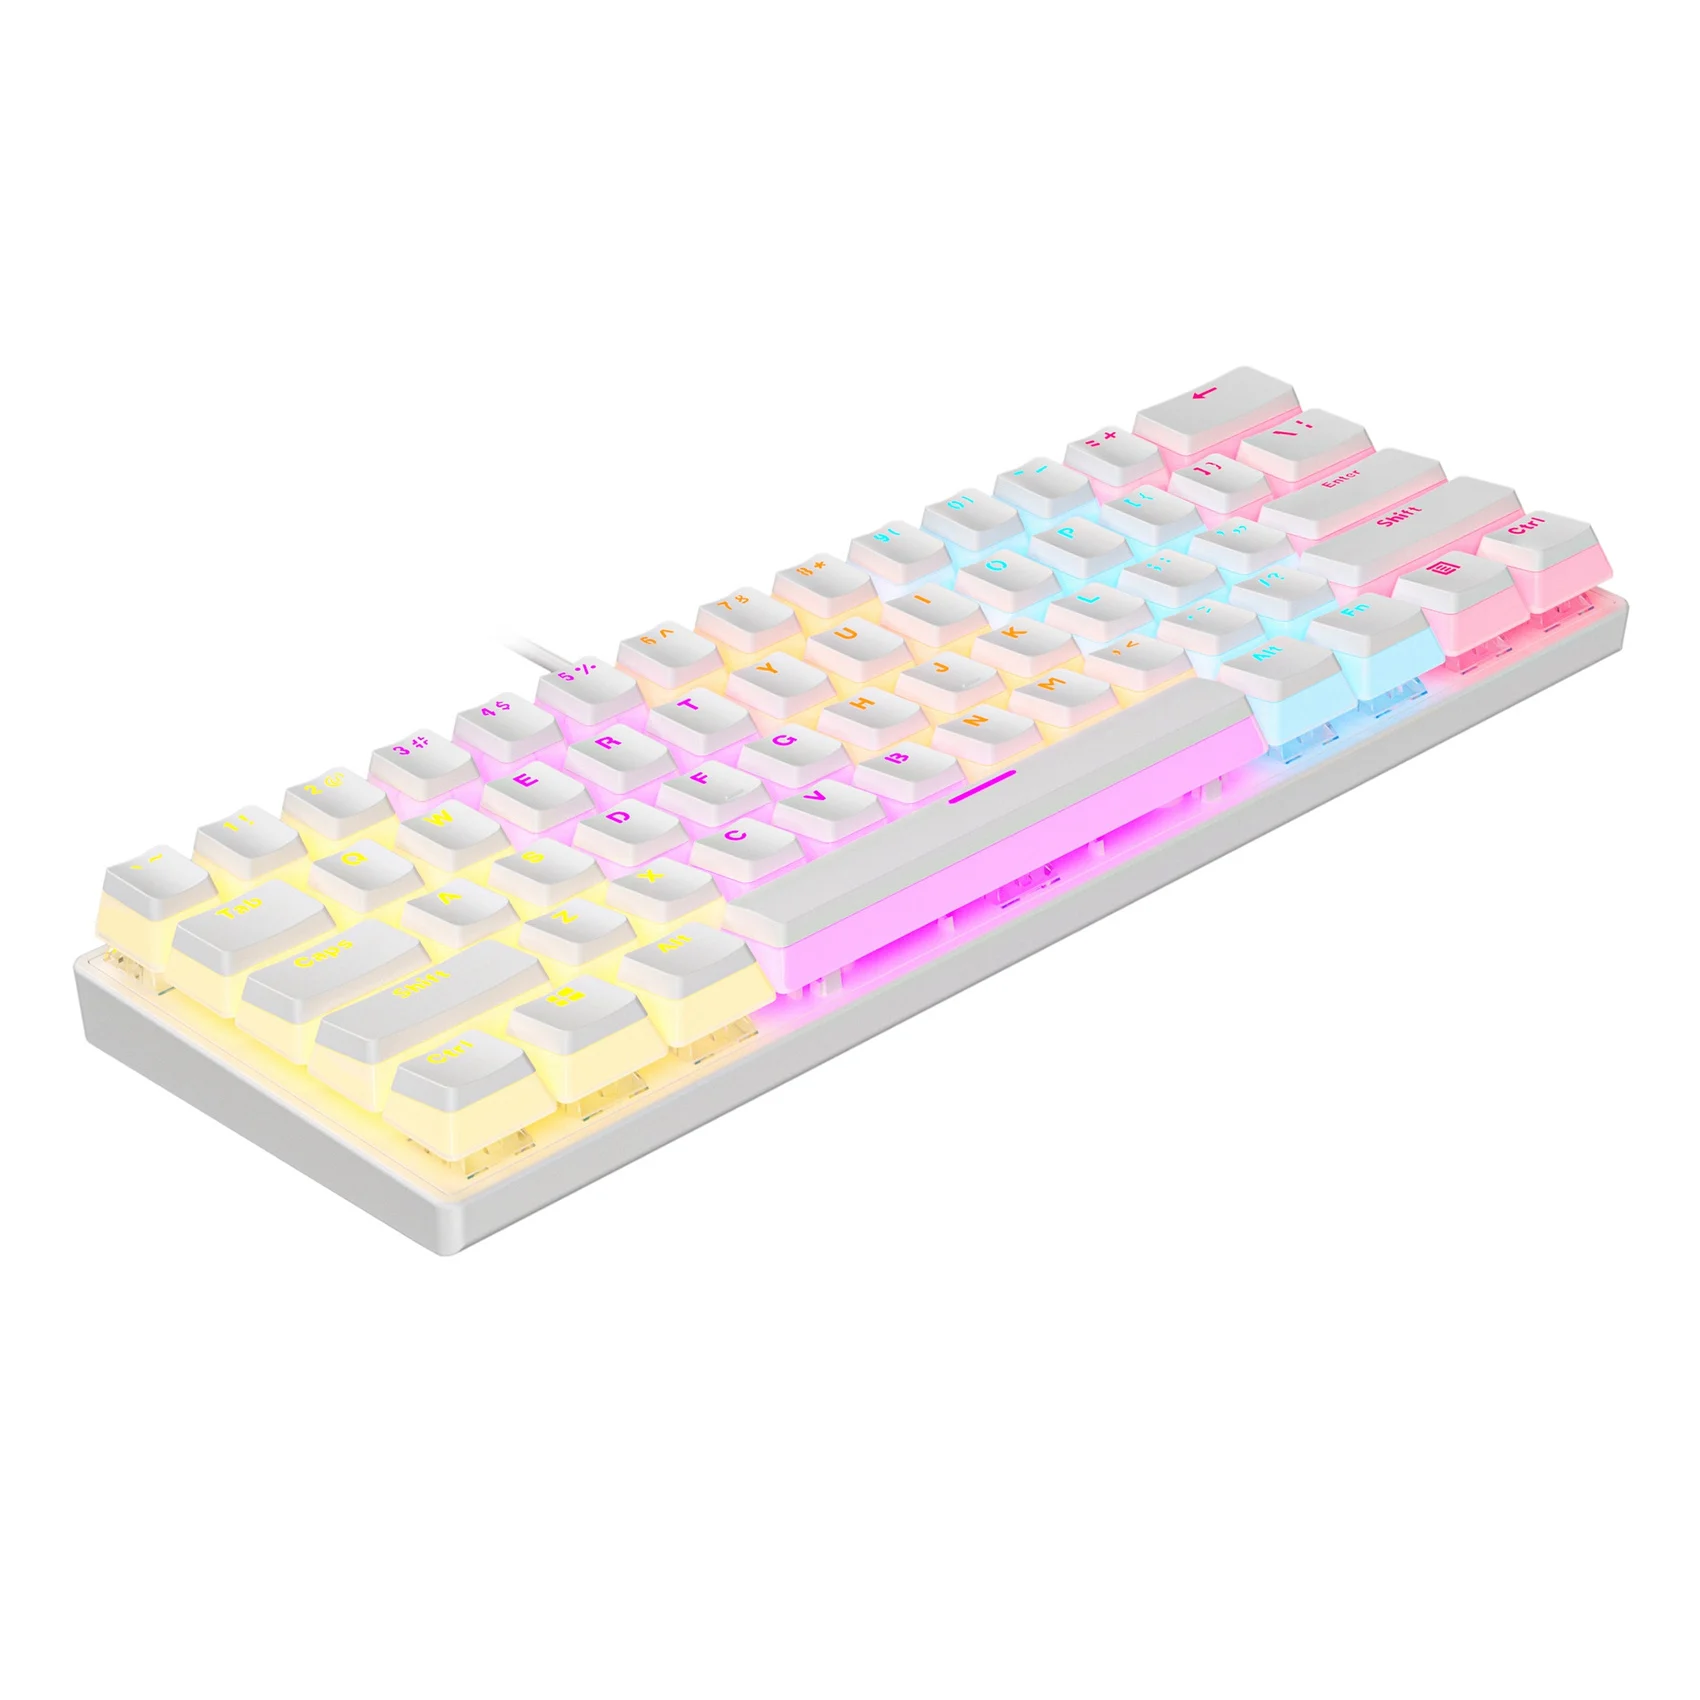 

Механическая клавиатура с подсветкой RGB, 61 клавиша, проводная клавиатура с двумя кожаными клавишами, механическая клавиатура белого цвета